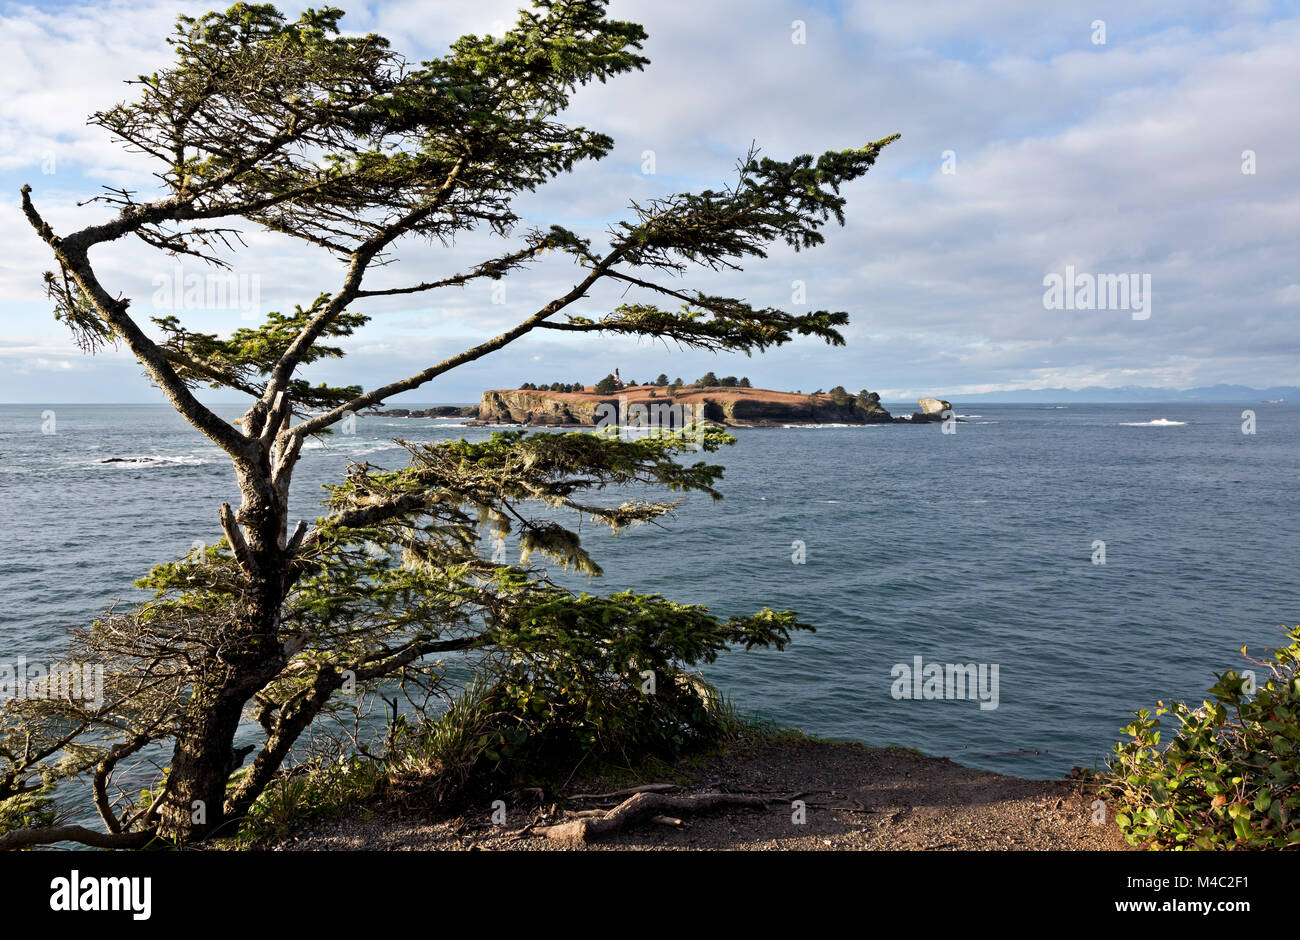 WA 13446-00 ... WASHINGTON - verwitterter Baum auf der Landspitze am Cape Flattery mit Blick auf den Pazifischen Ozean mit Cape Flattery Licht und Tatoosh Island in Stockfoto